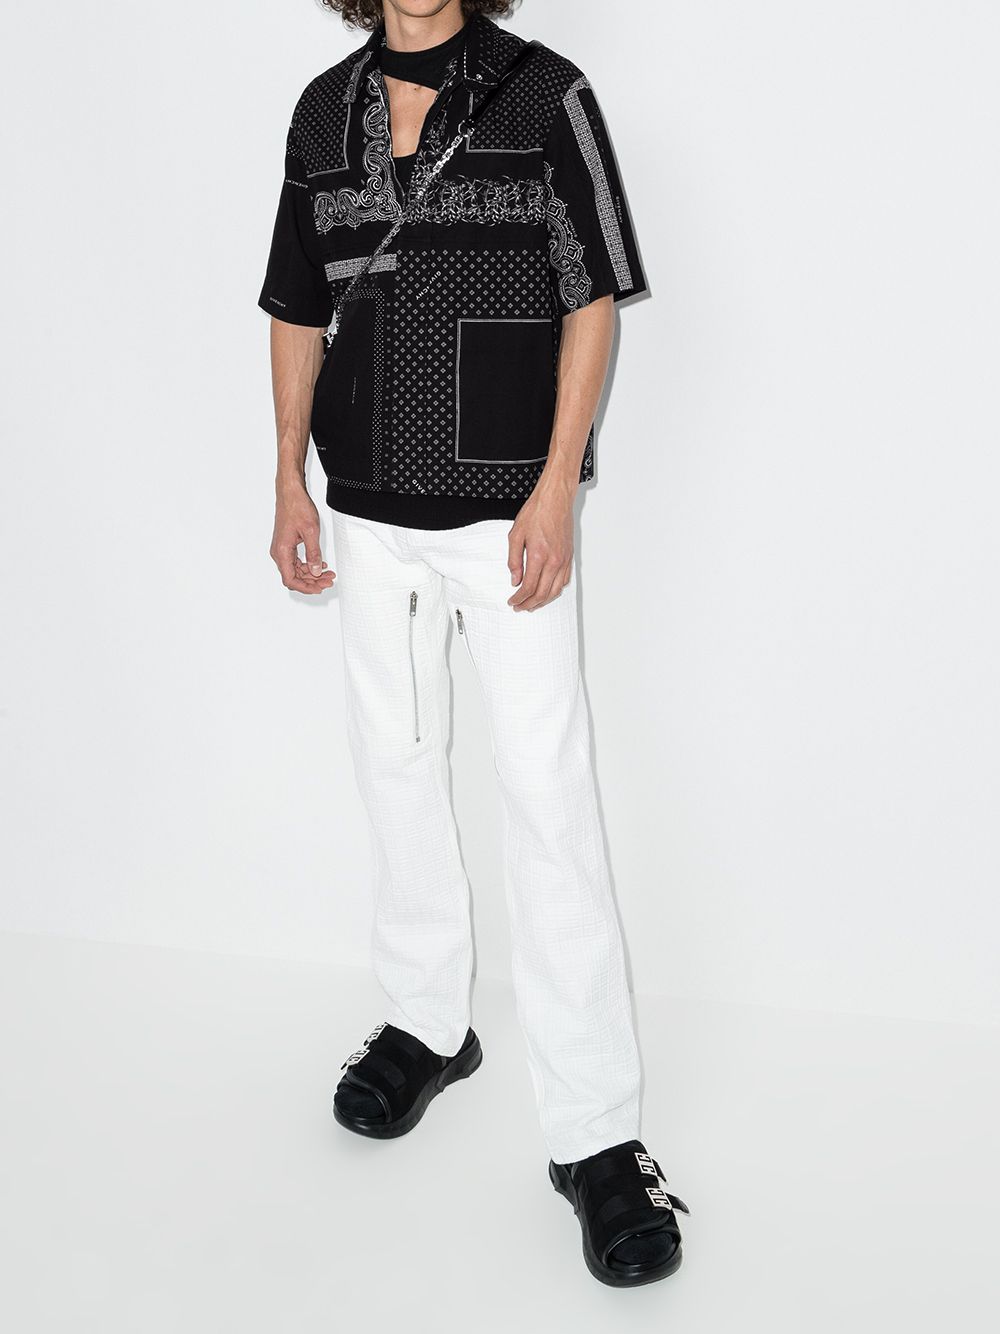 фото Givenchy рубашка на молнии с воротником-стойкой